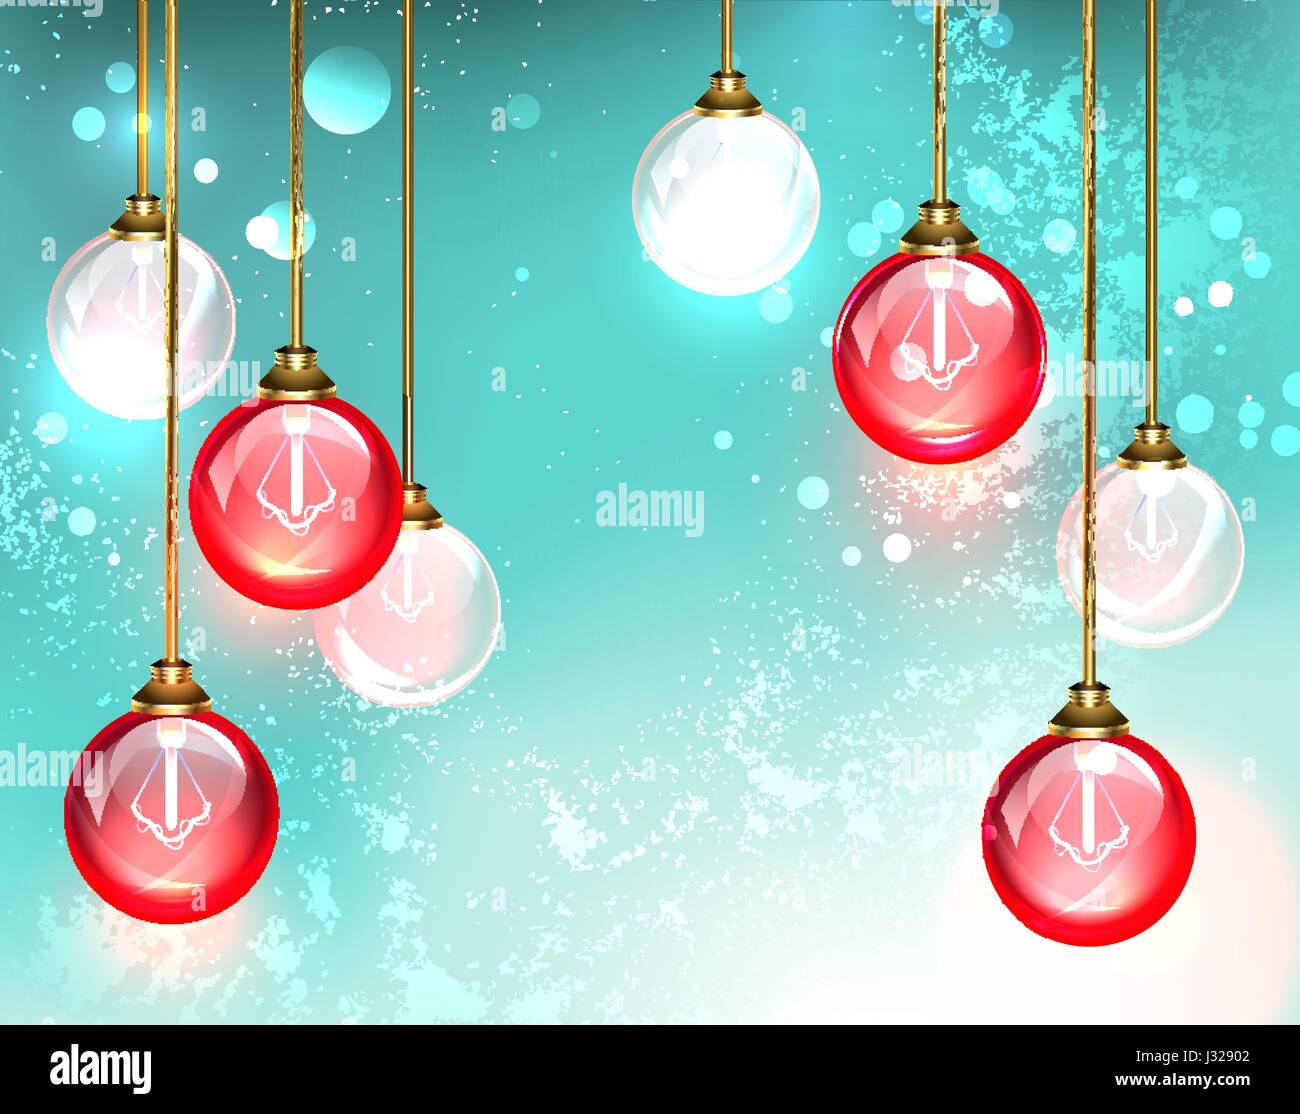 Mode-Kronleuchter mit hängenden roten runden Glas Lampe leuchten auf dem türkisfarbenen Hintergrund. Design mit Birnen. Stock Vektor